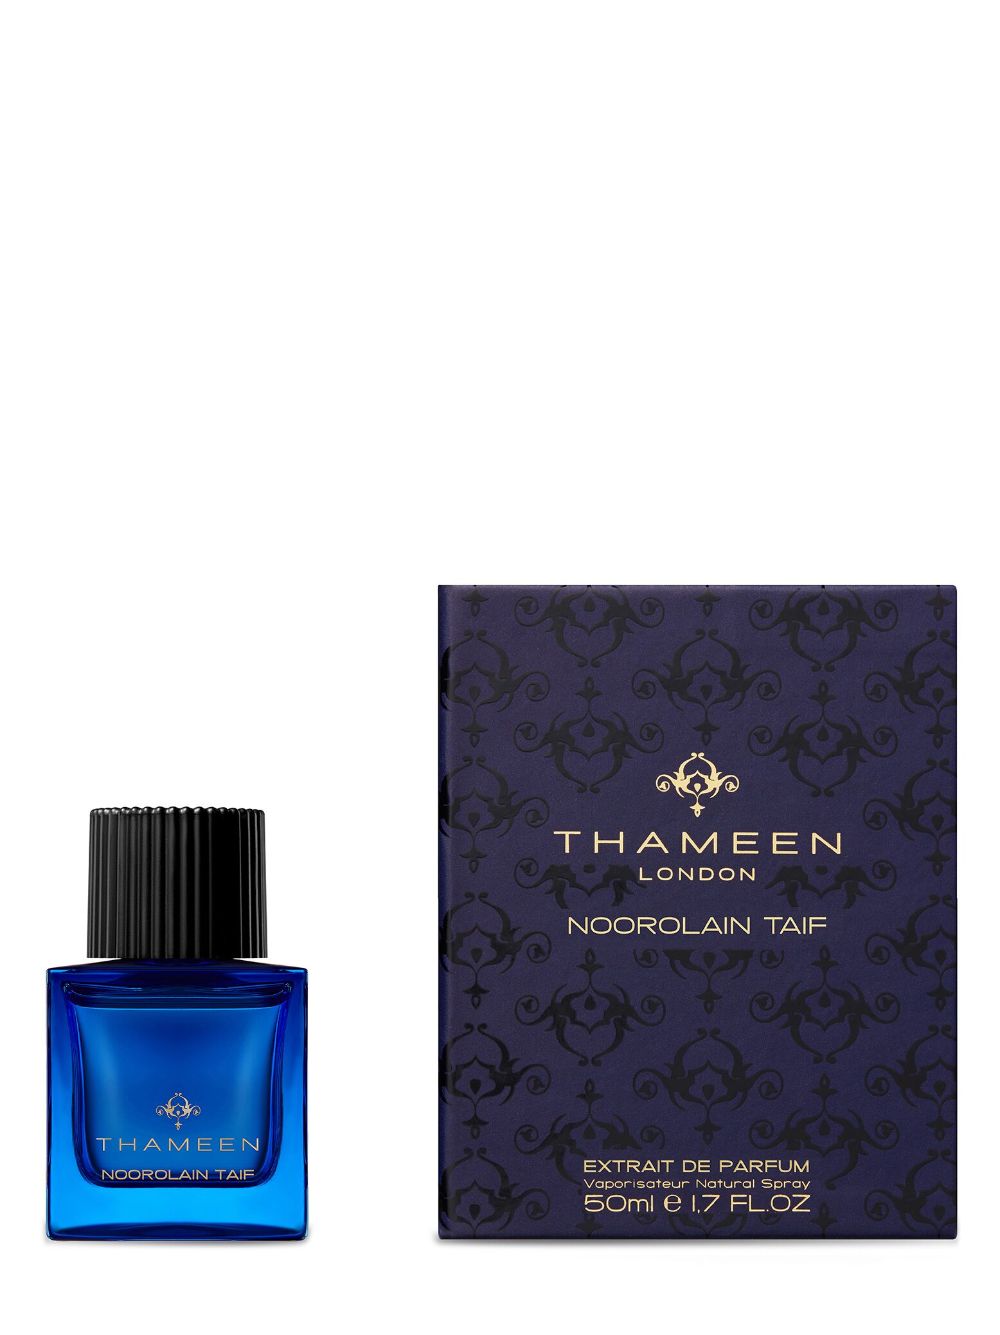 Thameen London Noorolain Taif eau de parfum - NEUTRAL